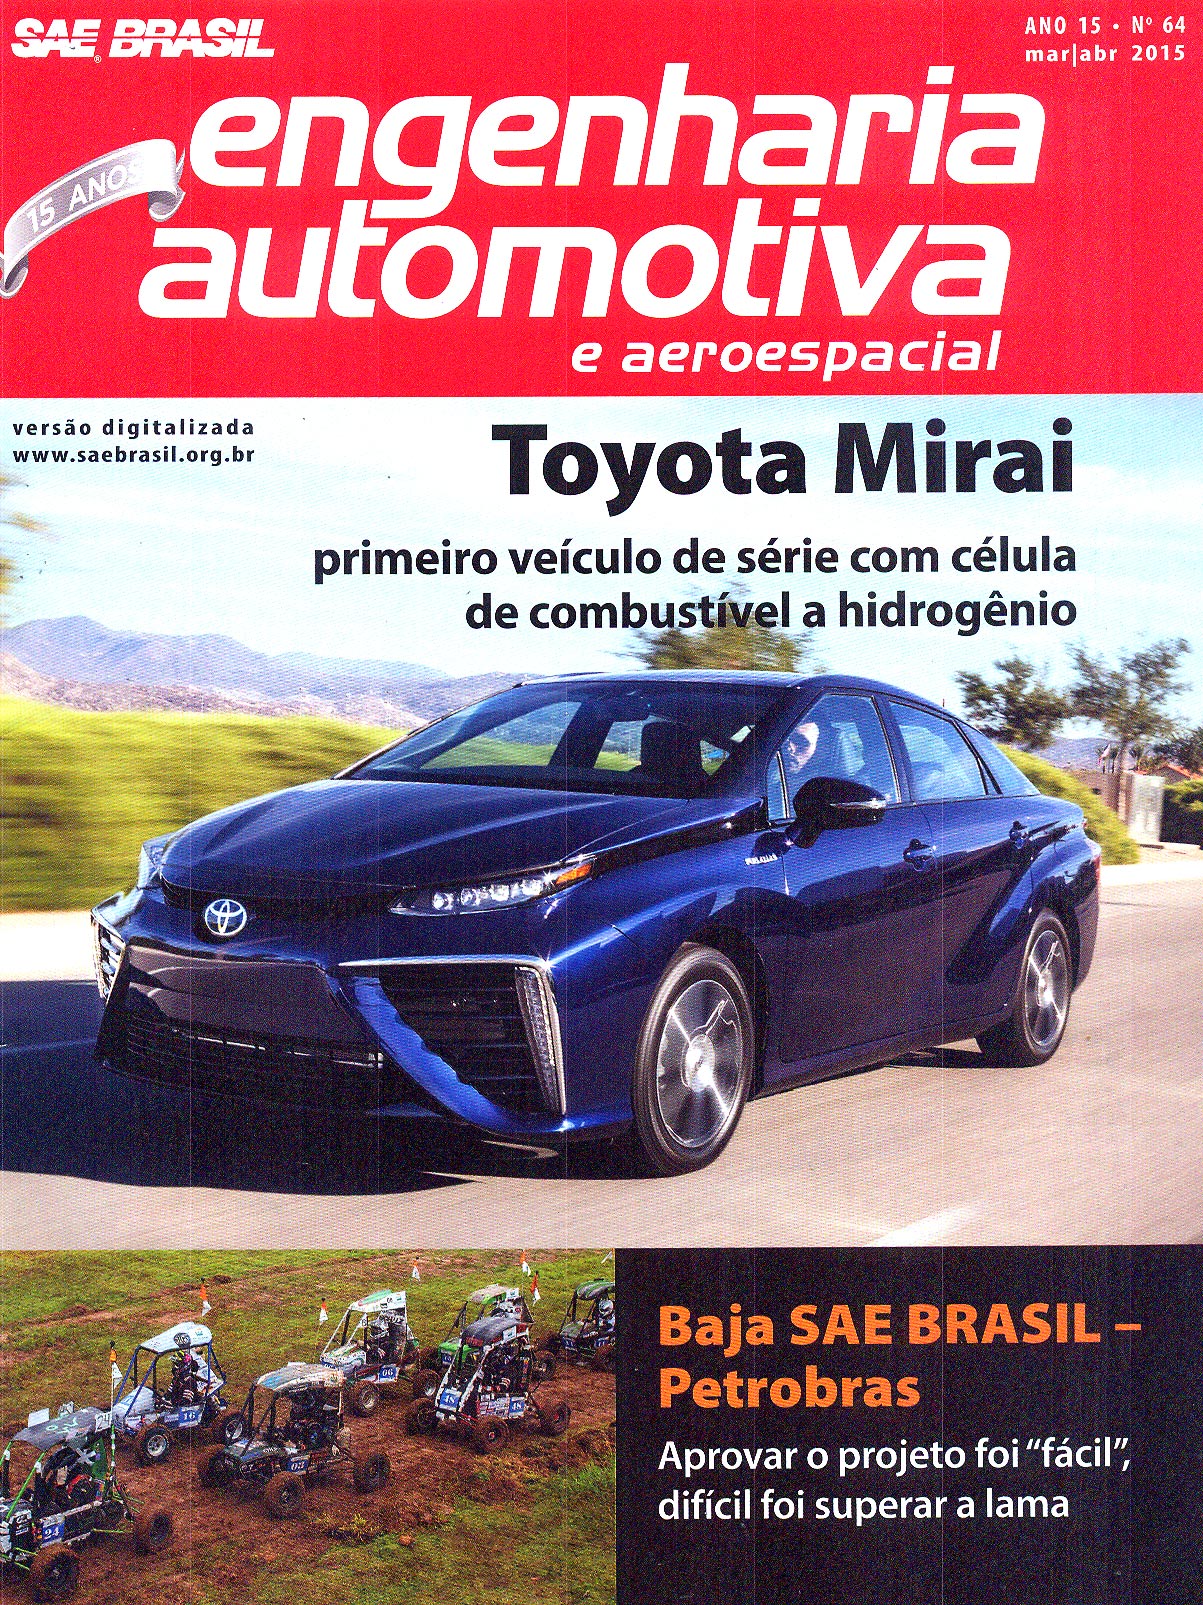 Revista Sae Brasil Engenharia Automotiva e Aeroespacial mostra maturidade de projetos da Helibras